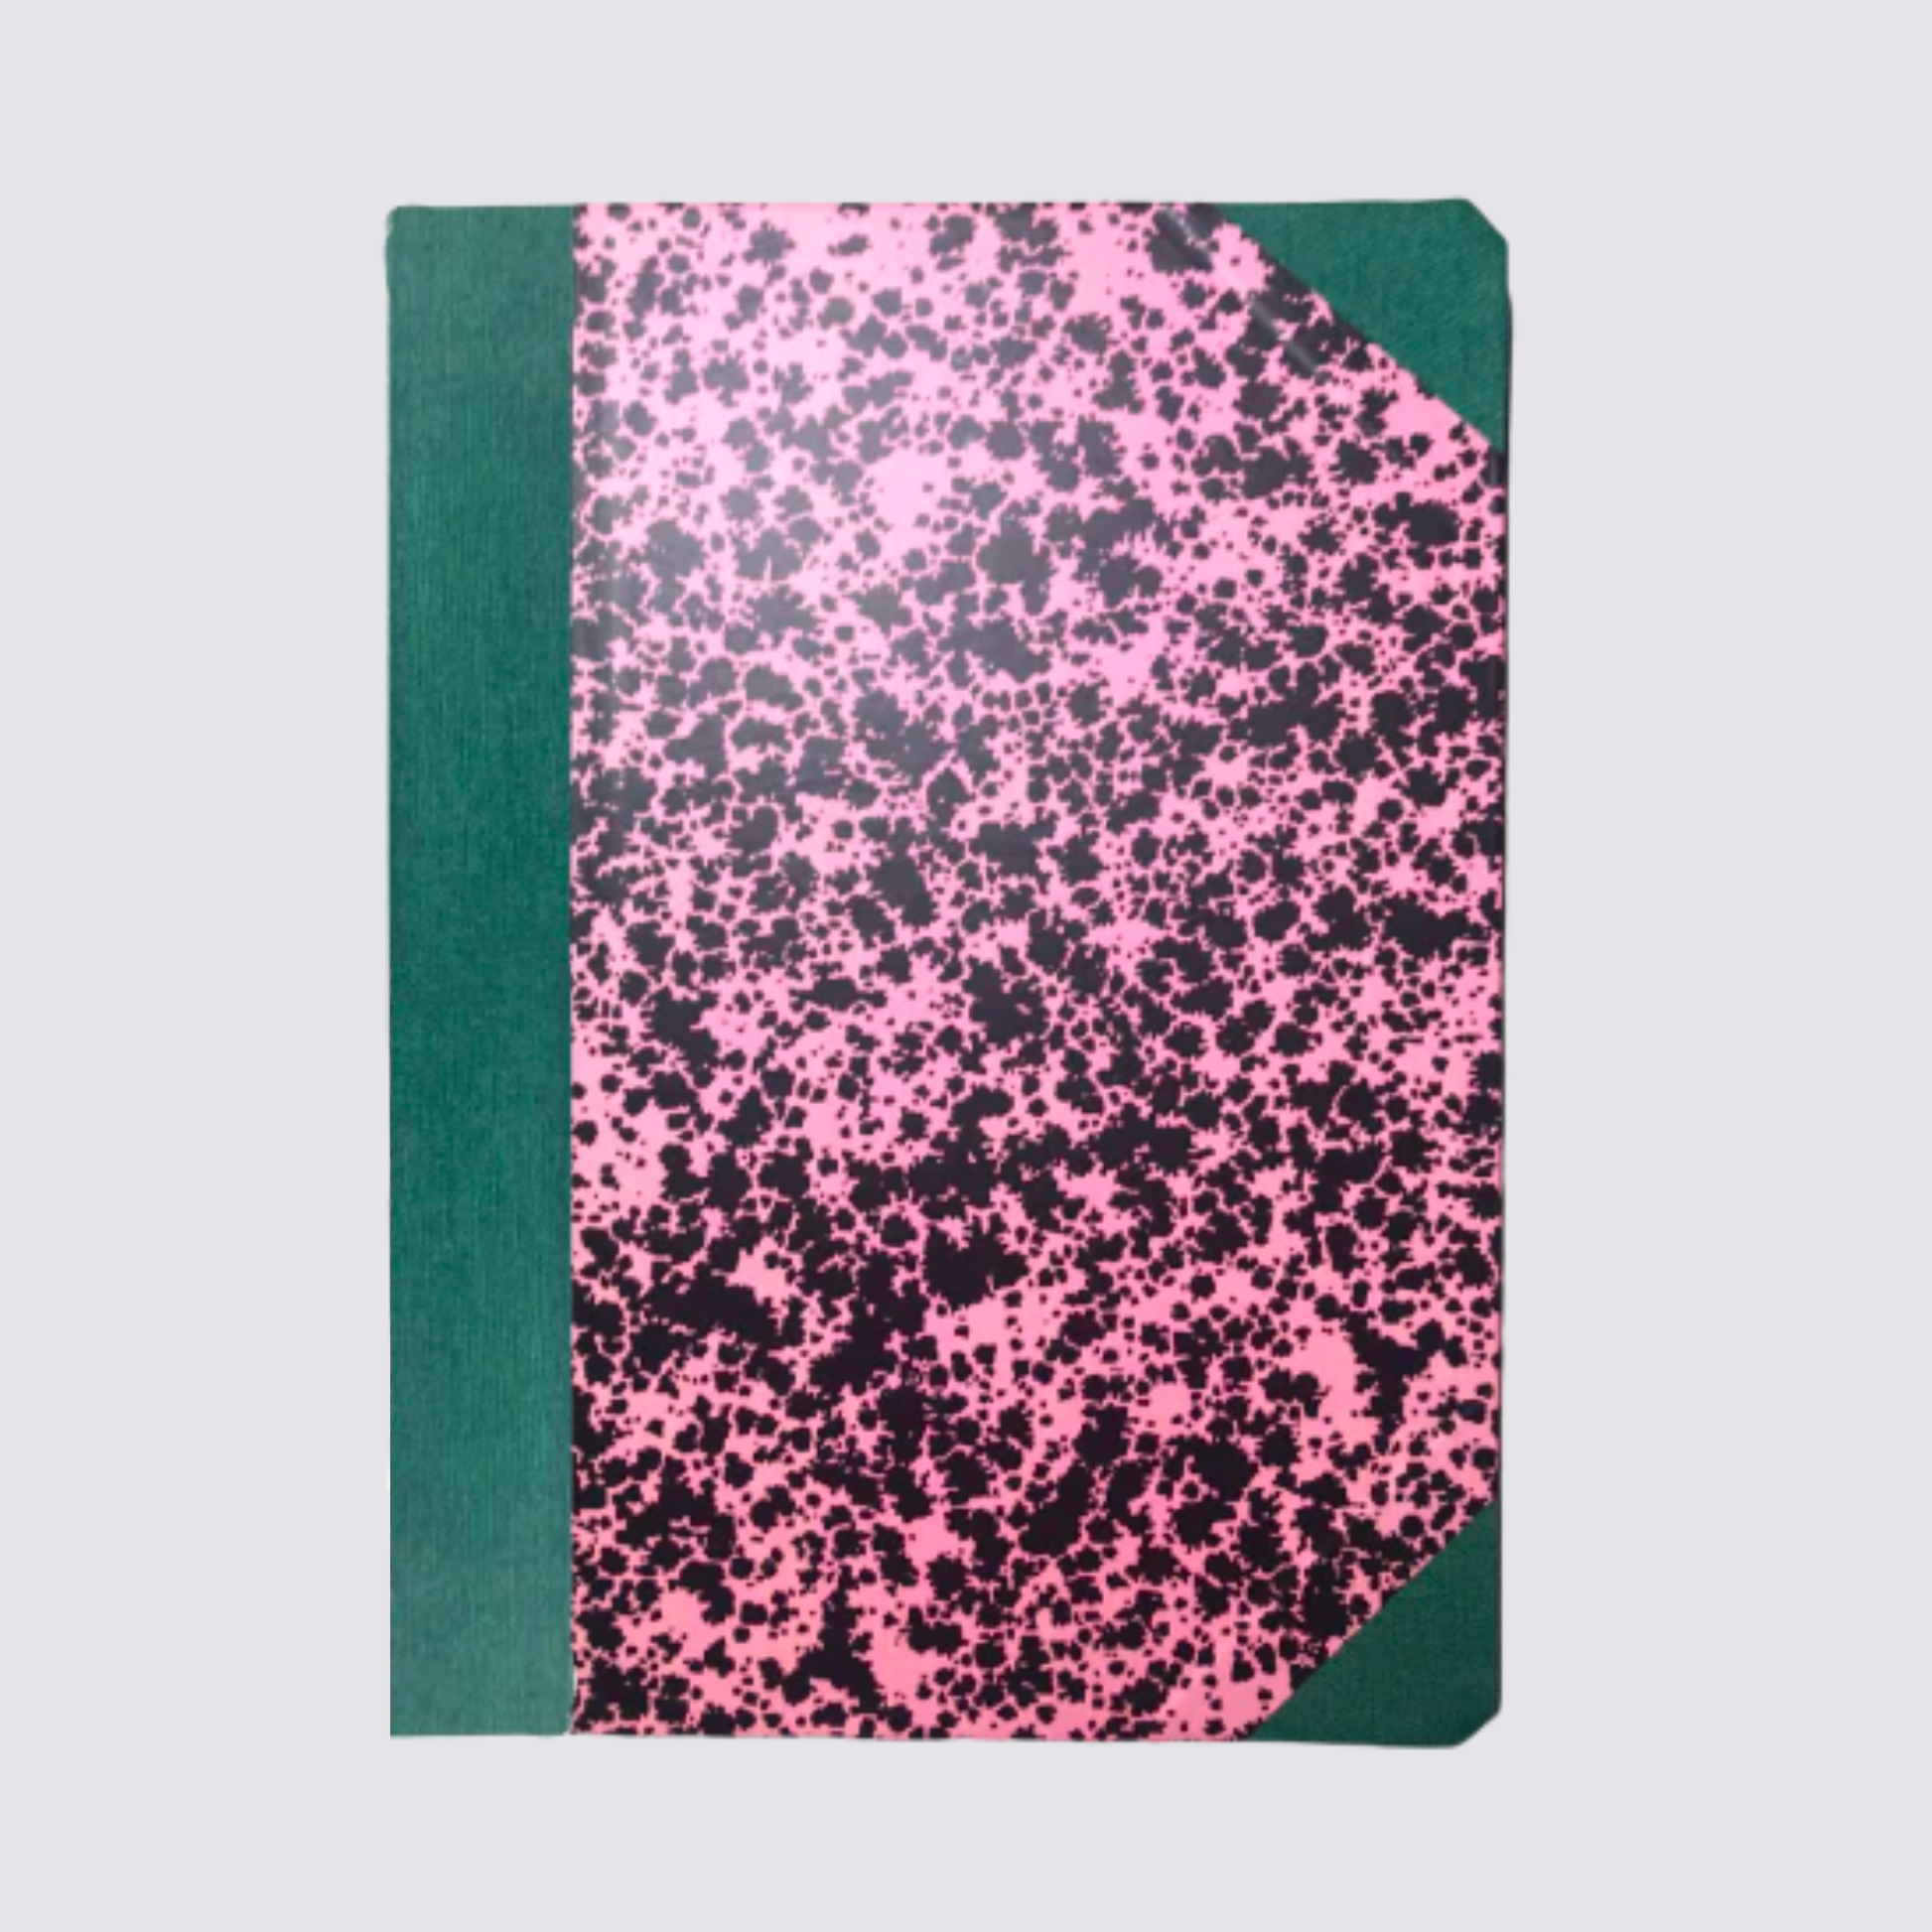 Cloud Garden A5 Notebook - Pink